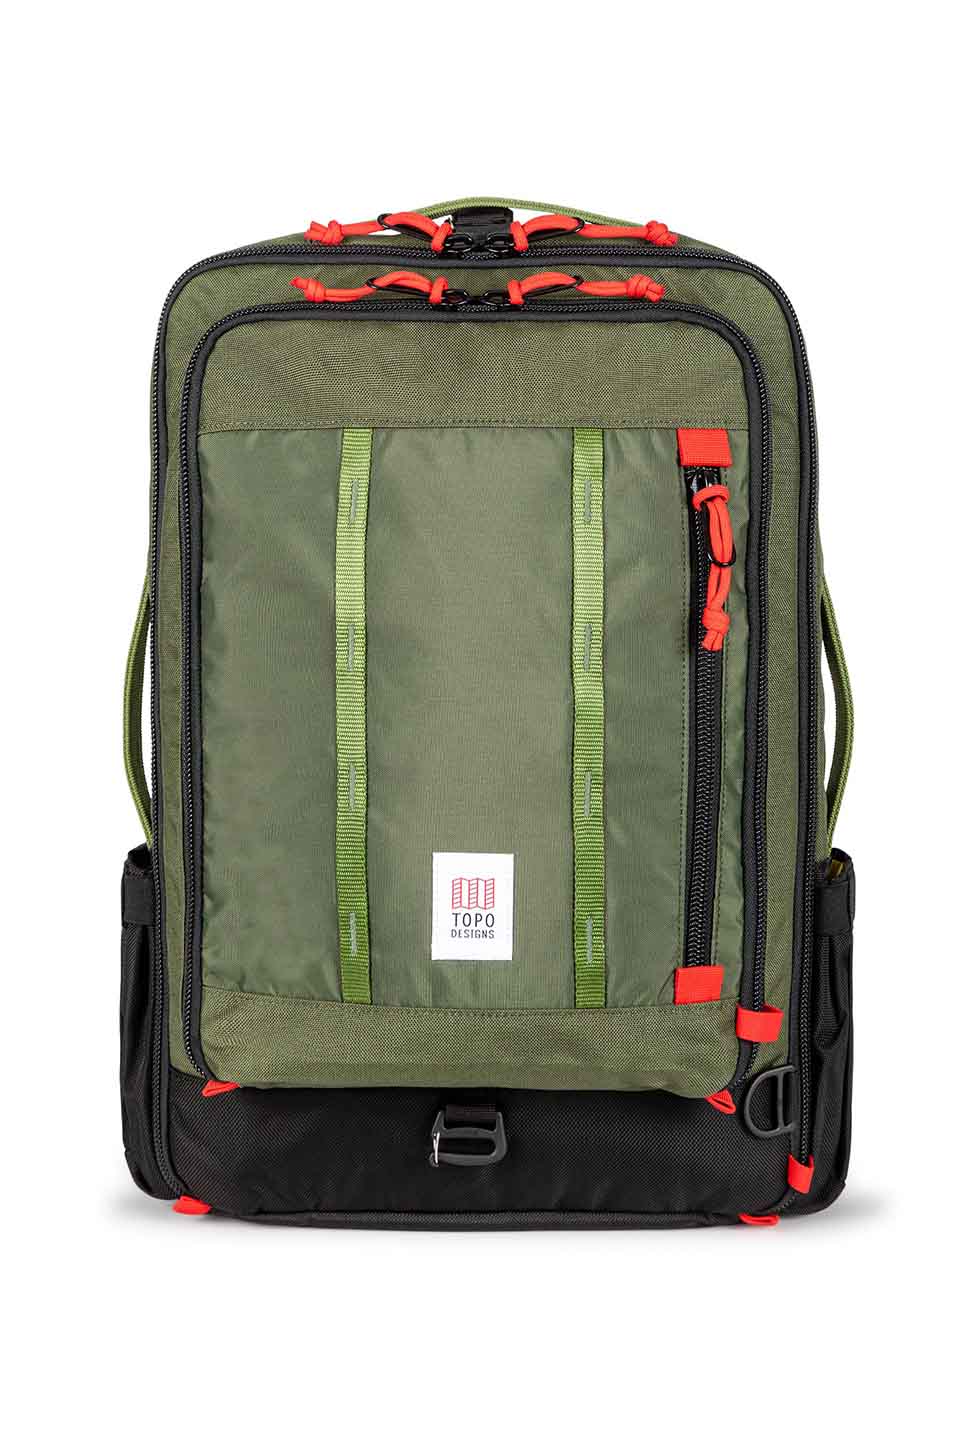 Topo - Global Travel Bag 30L - Olive/Olive - Front